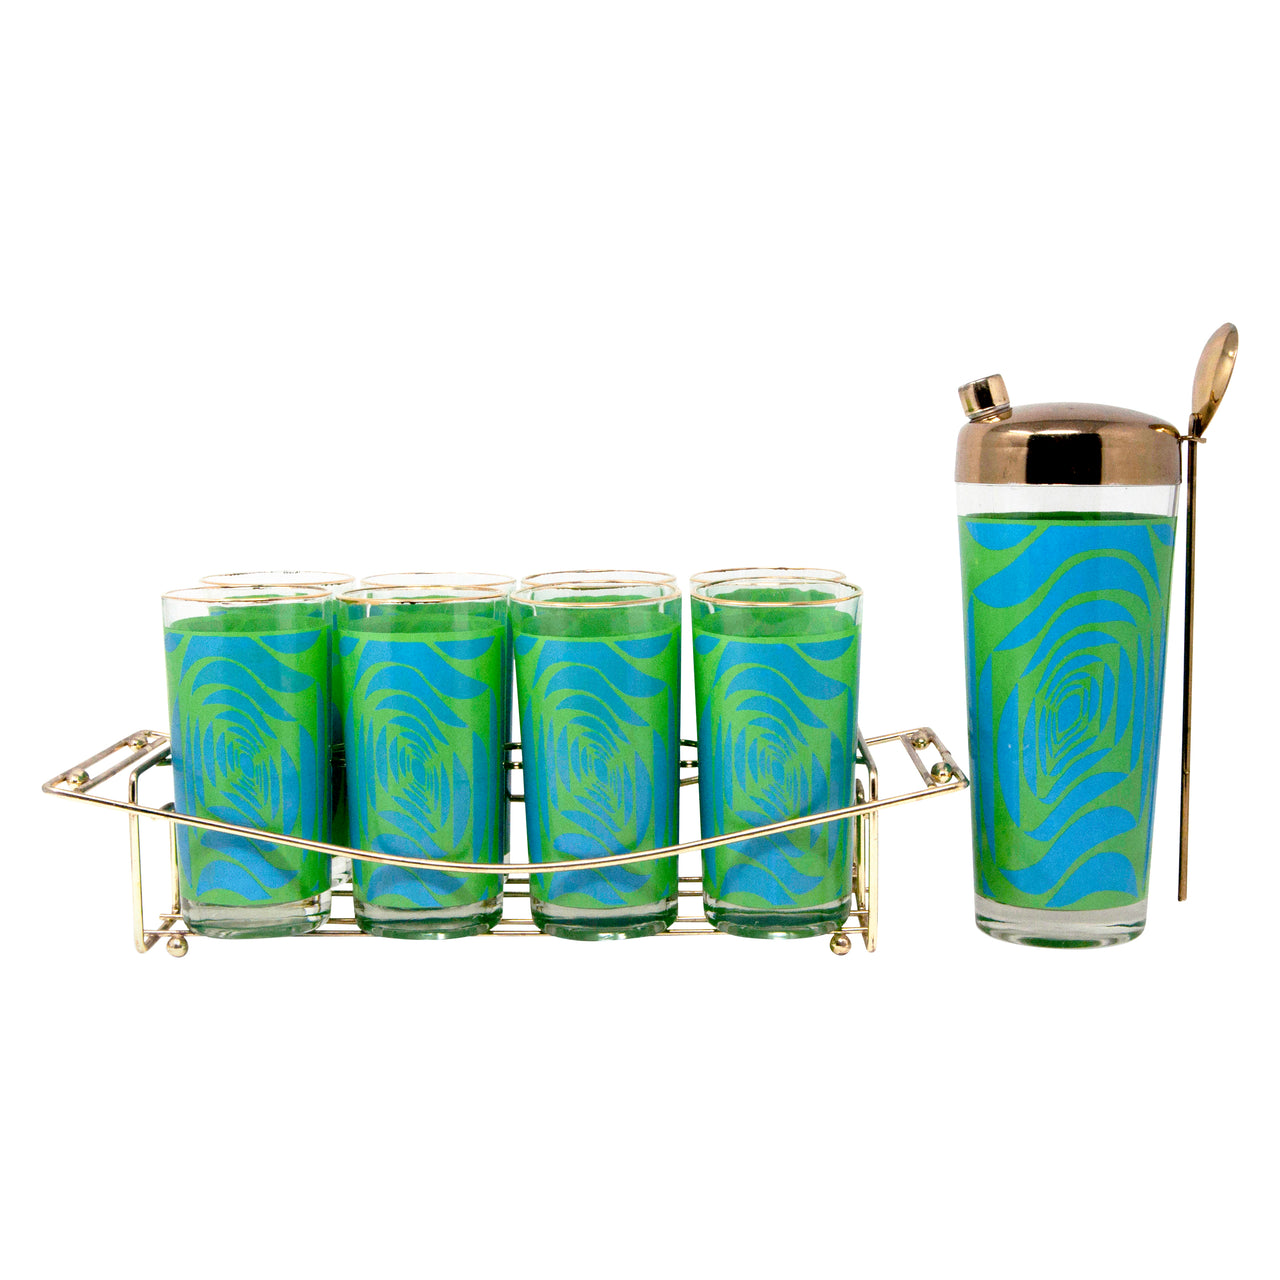 https://thehourshop.com/cdn/shop/products/8267-Vintage-Blue-Green-Gold-Rim-Cocktail-Shaker-Caddy-Glasses-Set-side_1280x1280.jpg?v=1596061718